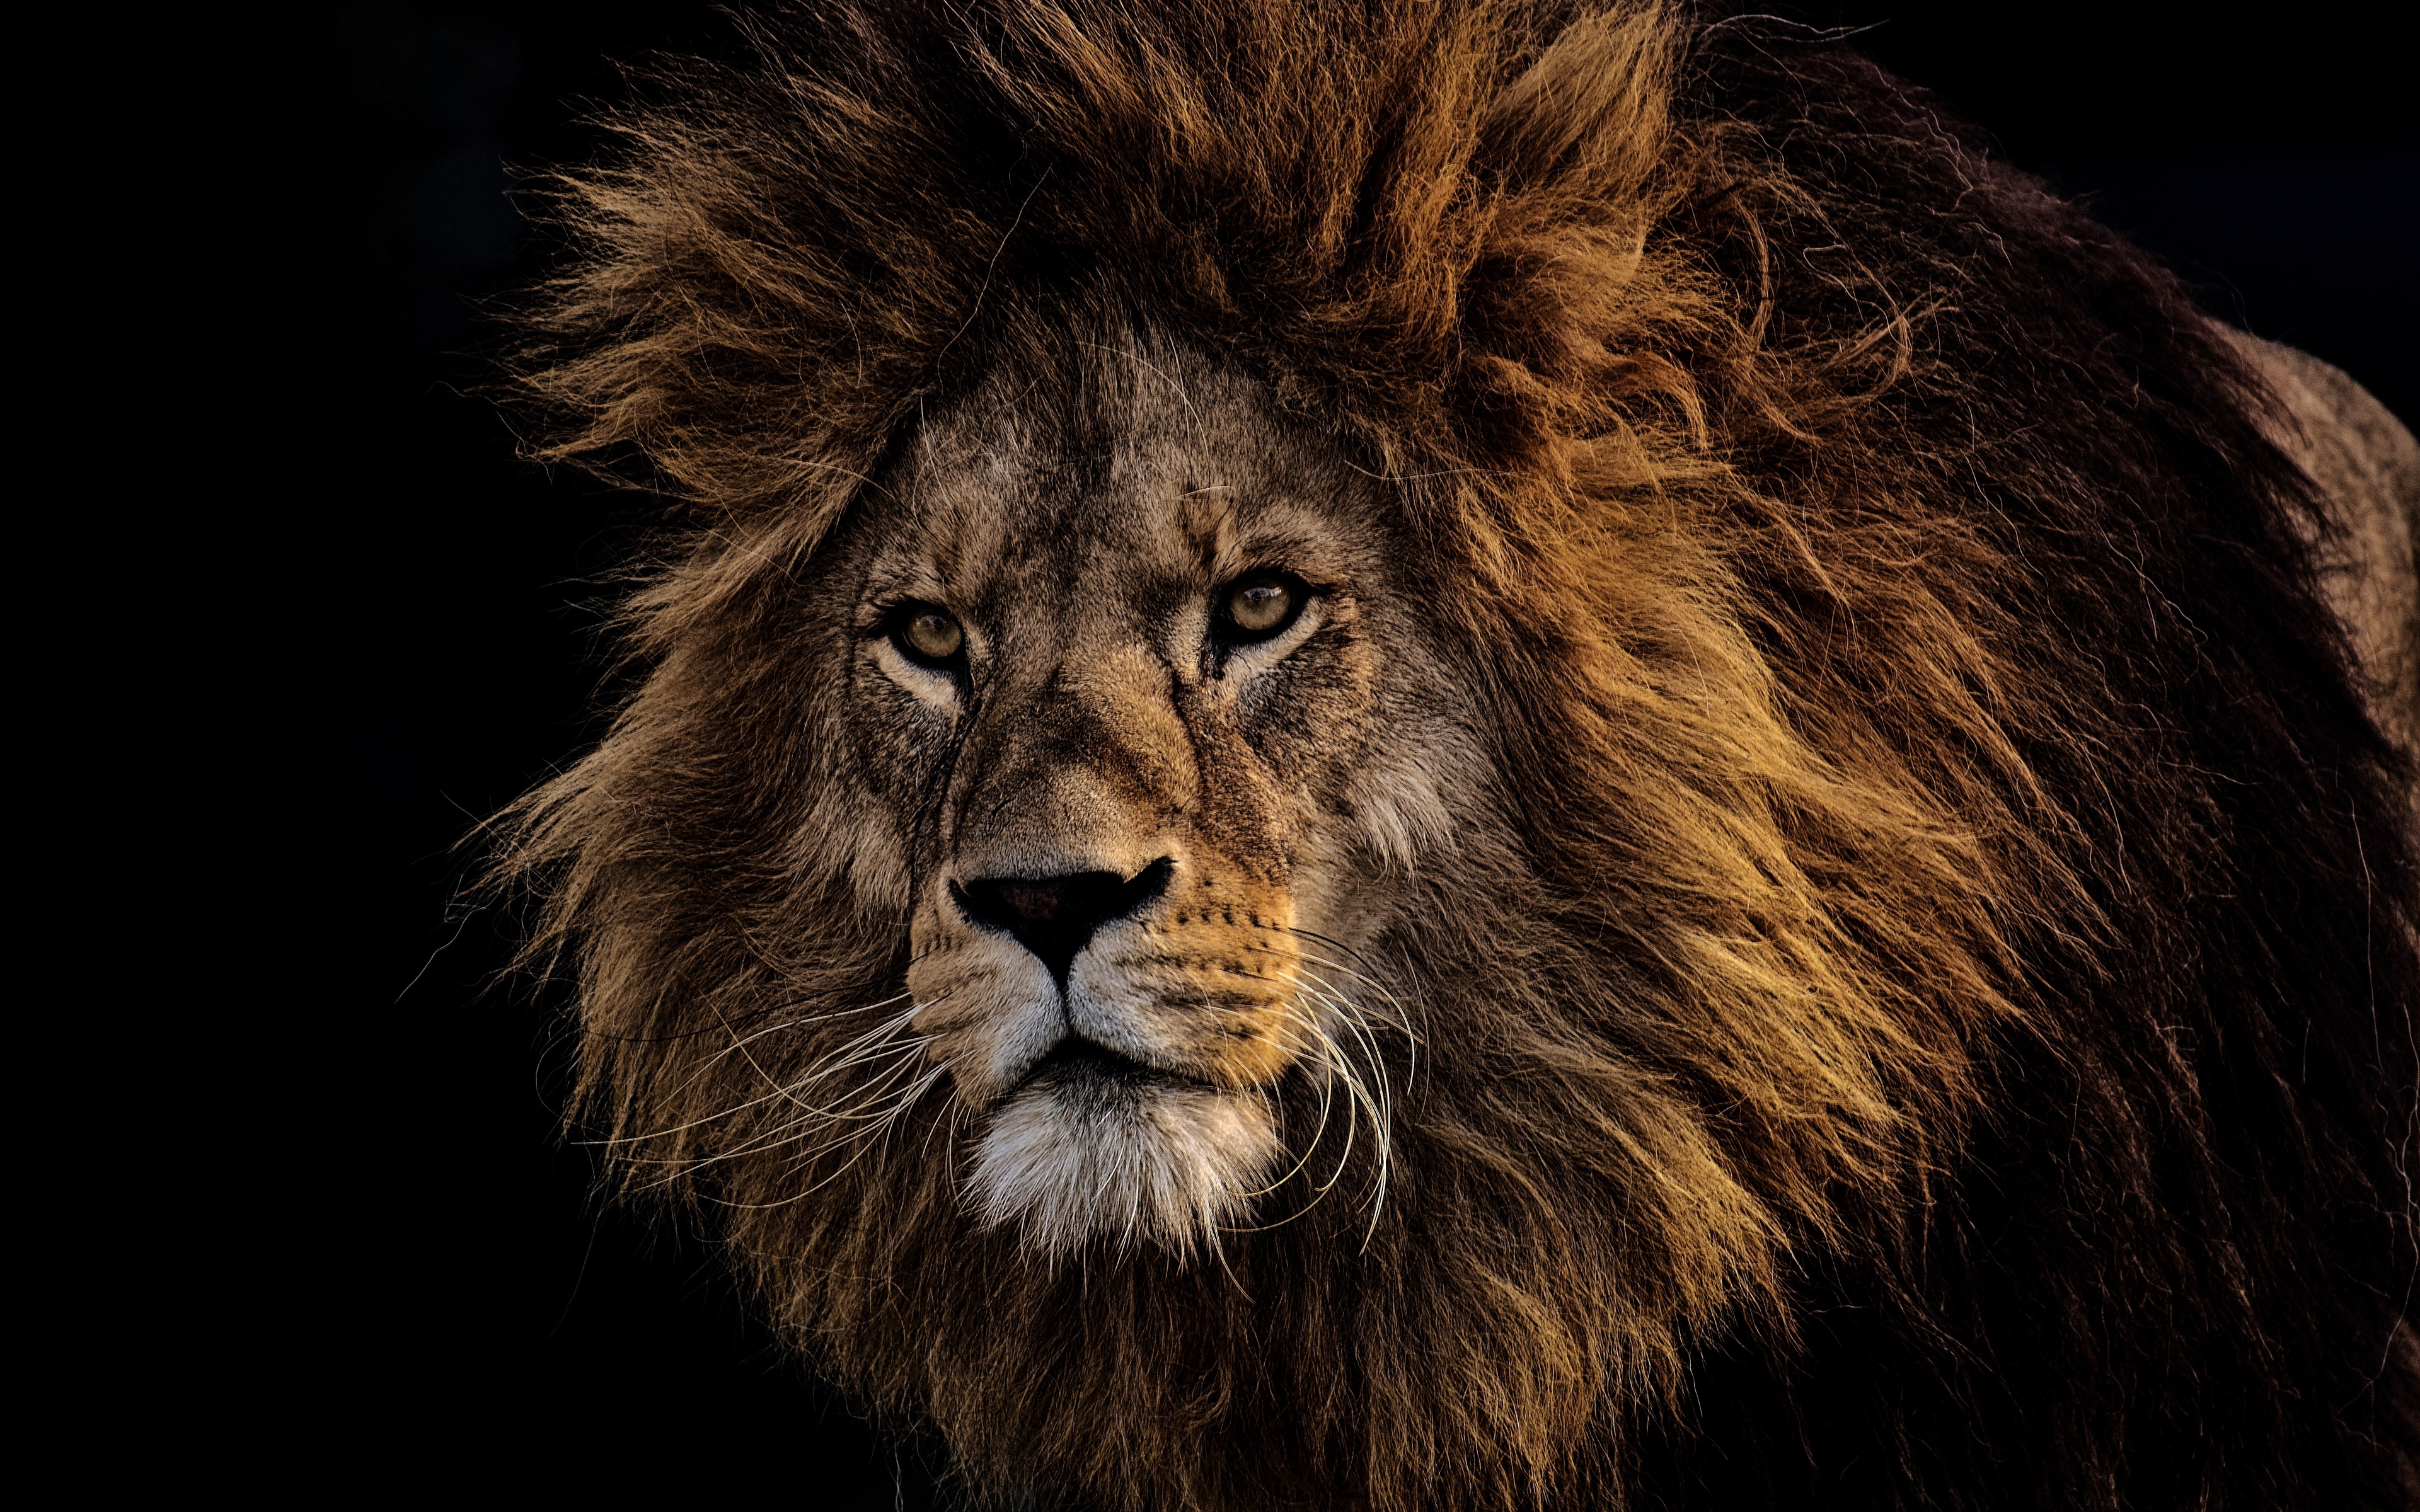 leon hd wallpaper,leone,capelli,natura,leone masai,felidae